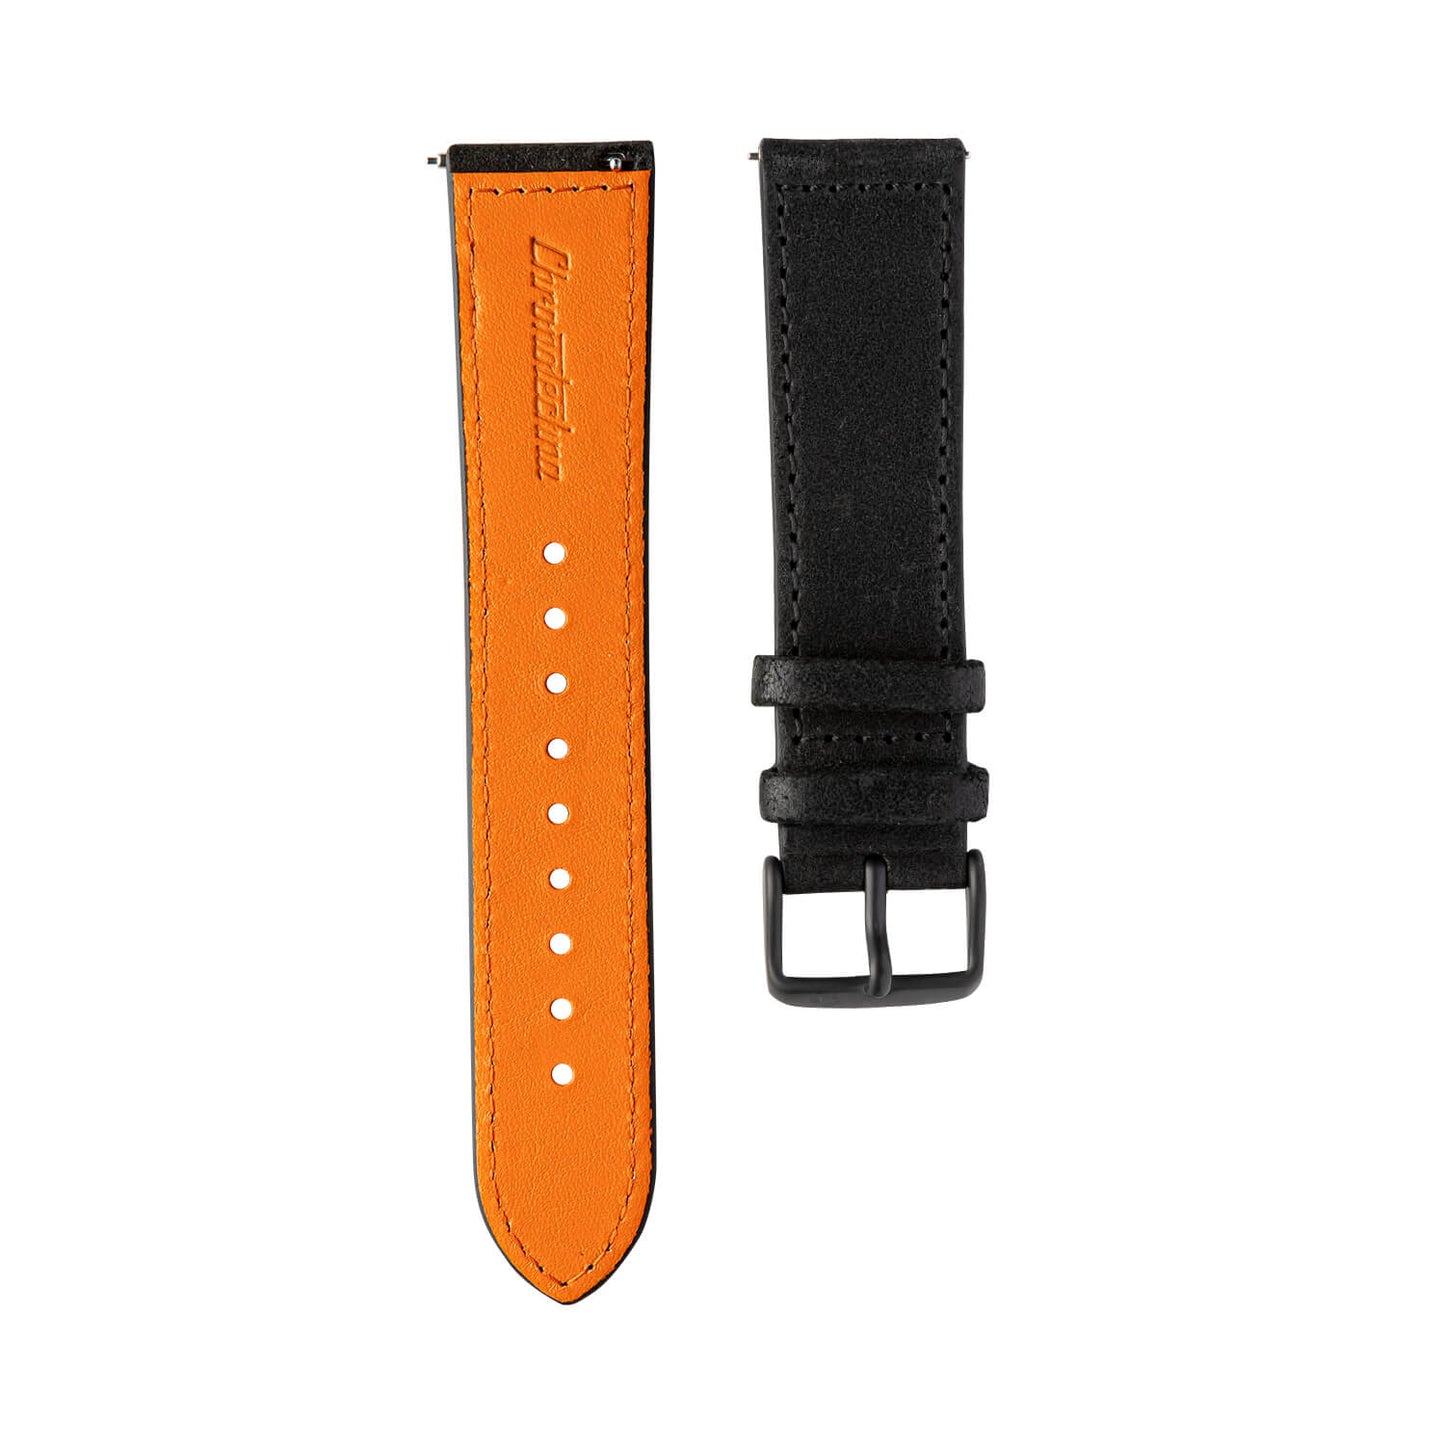 Černý kožený řemínek Chronotechna, oranžová spodní vrstva, hodinky NanoBlack, DLC černá spona, 22mm